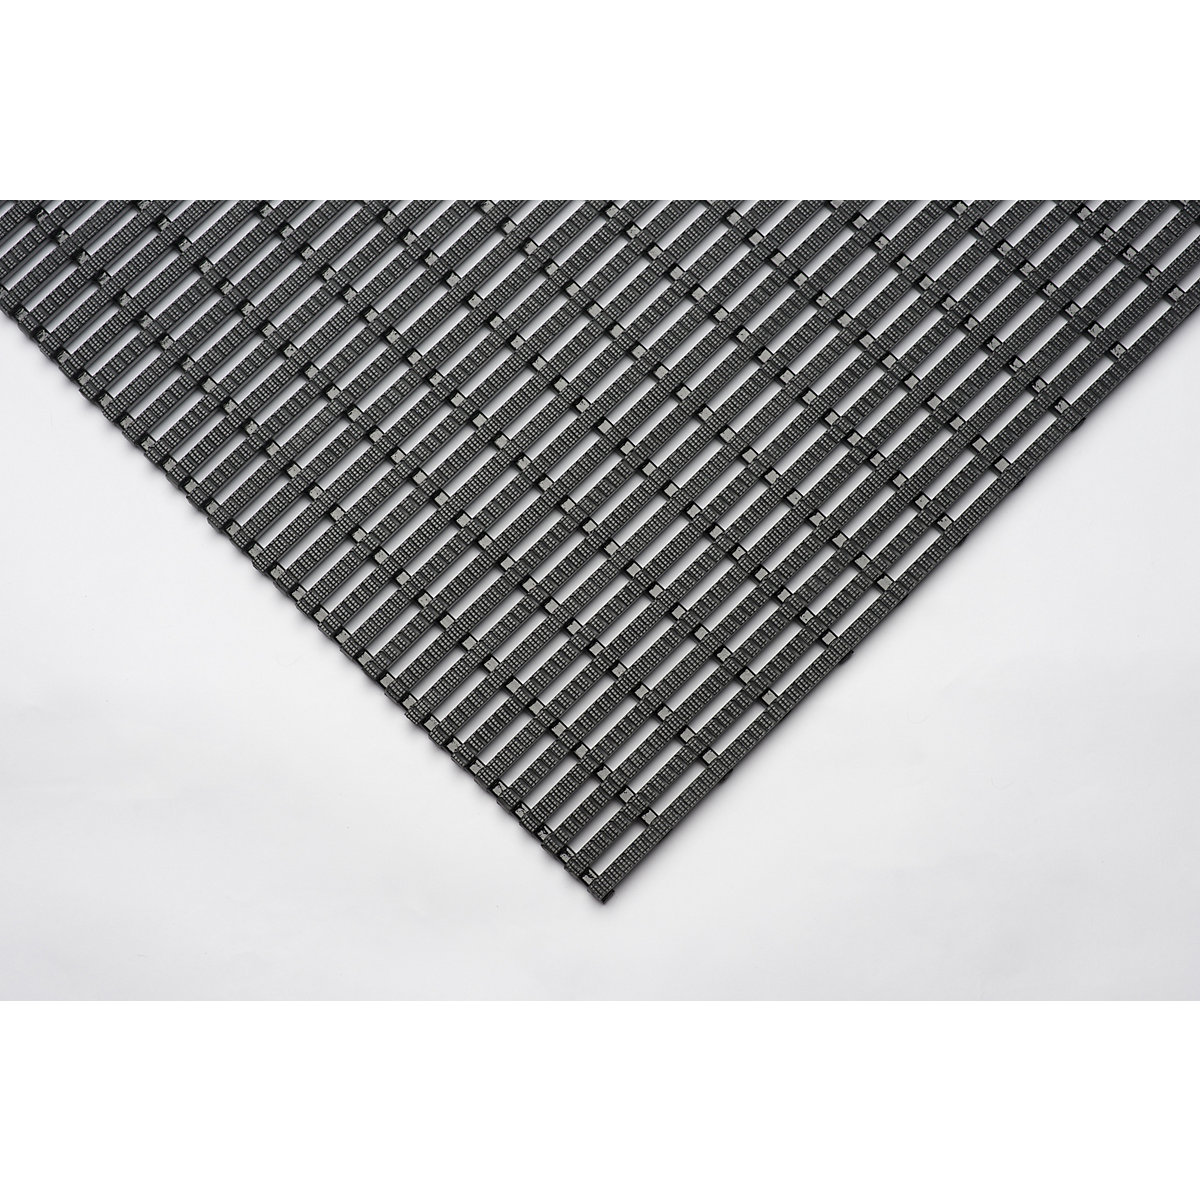 Tapis industriel antidérapant, rouleau de 10 m, noir, largeur 600 mm-1